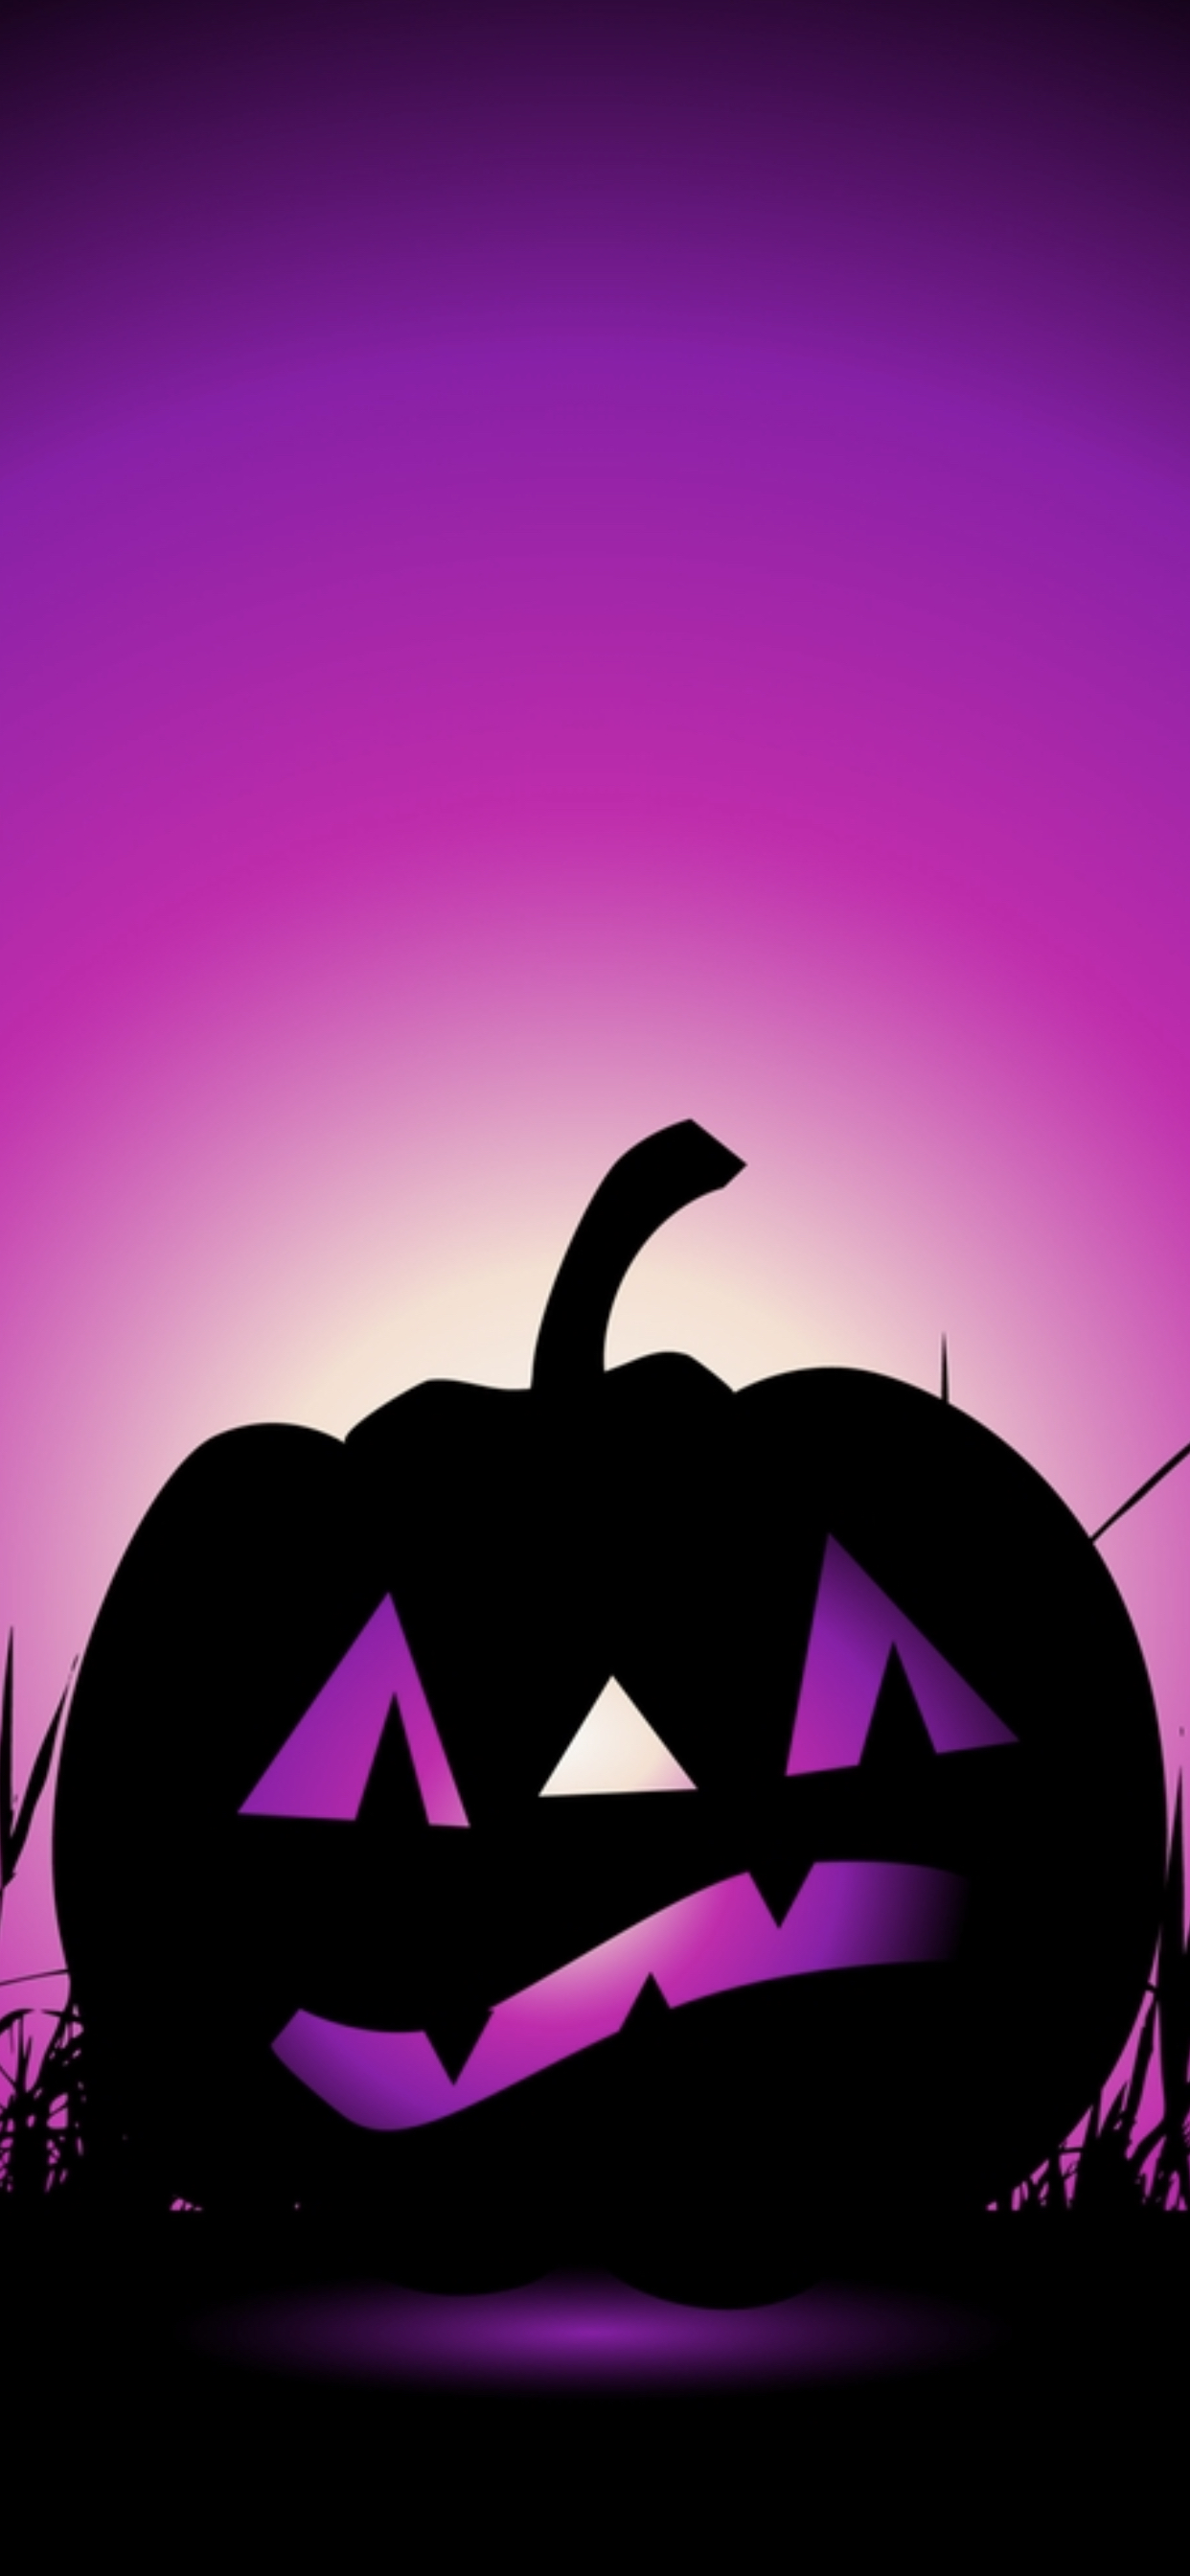 Happy Halloween  Textures  Abstract Background Wallpapers on Desktop  Nexus Image 2324191